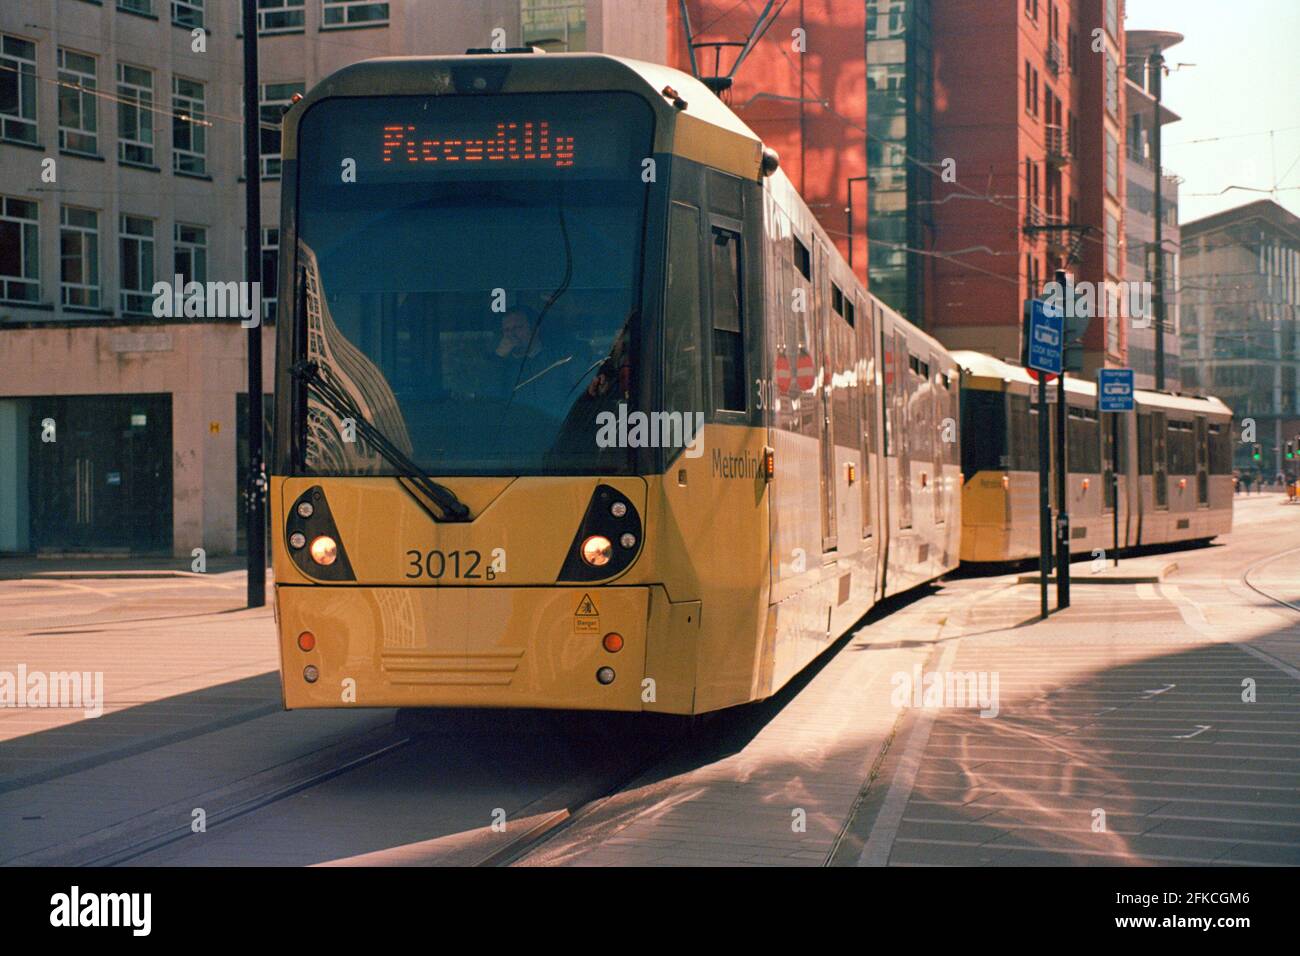 Manchester, Royaume-Uni - 3 avril 2021 : un tramway Manchester Metrolink (Bombardier M5000, no3012) à la place Saint-Pierre. Banque D'Images